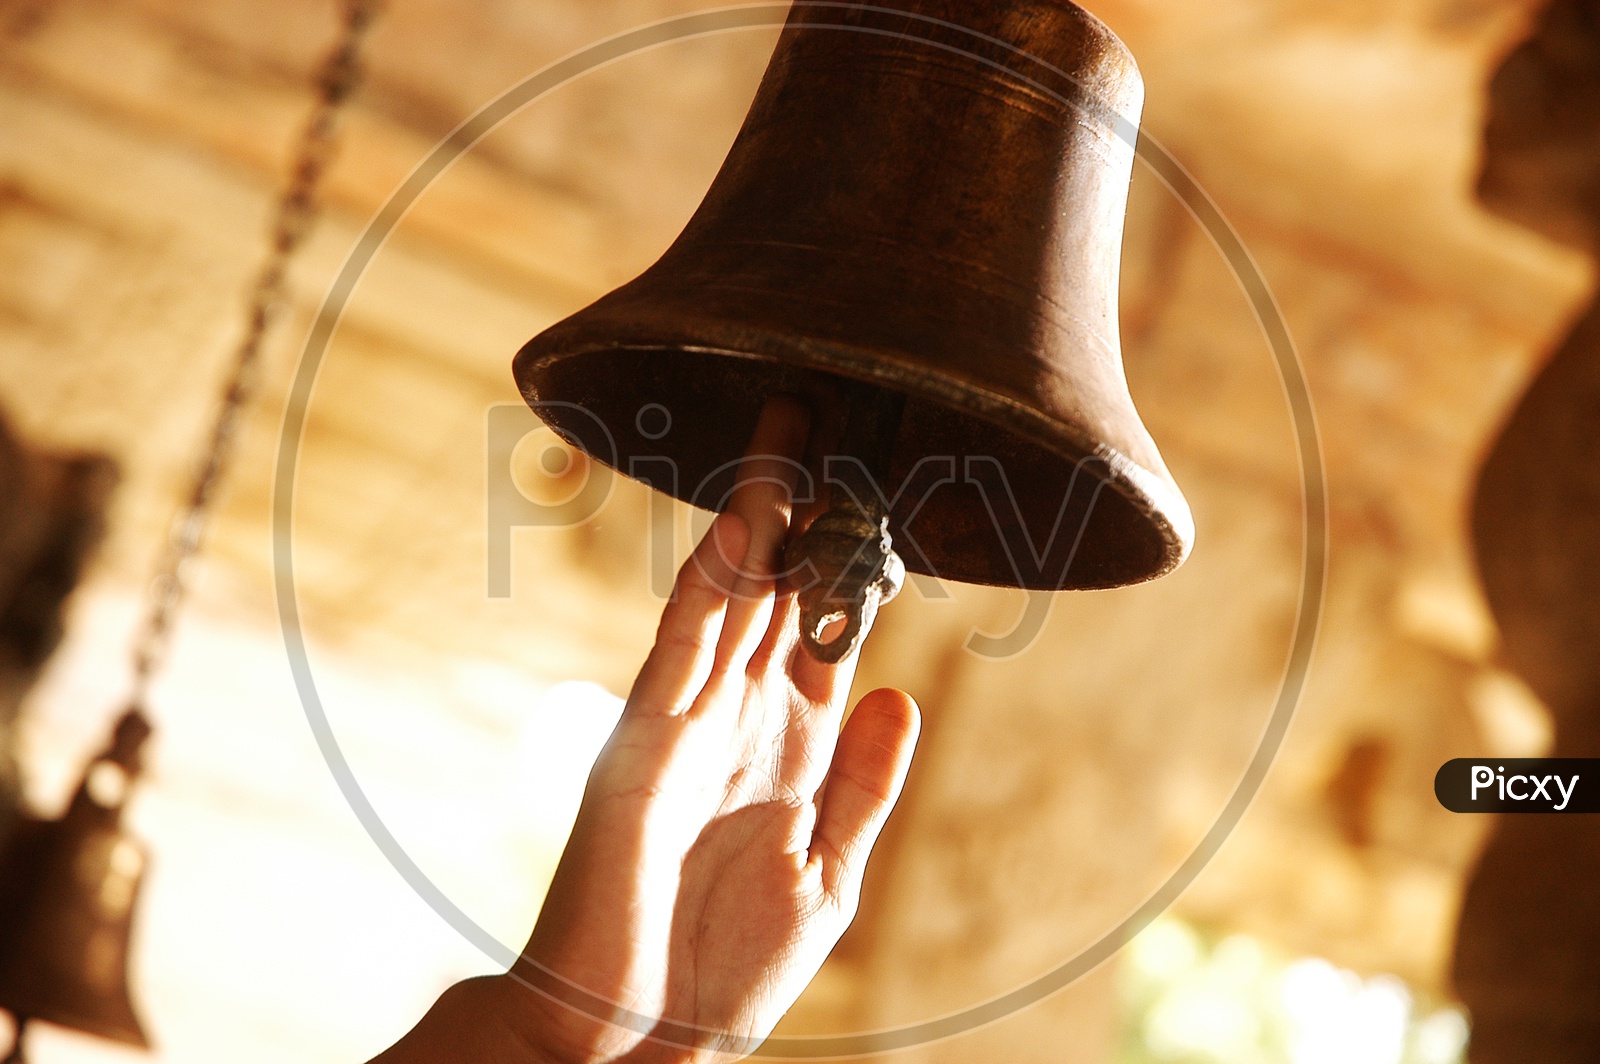 Bell ringing stock illustration. Illustration of bell - 16467636